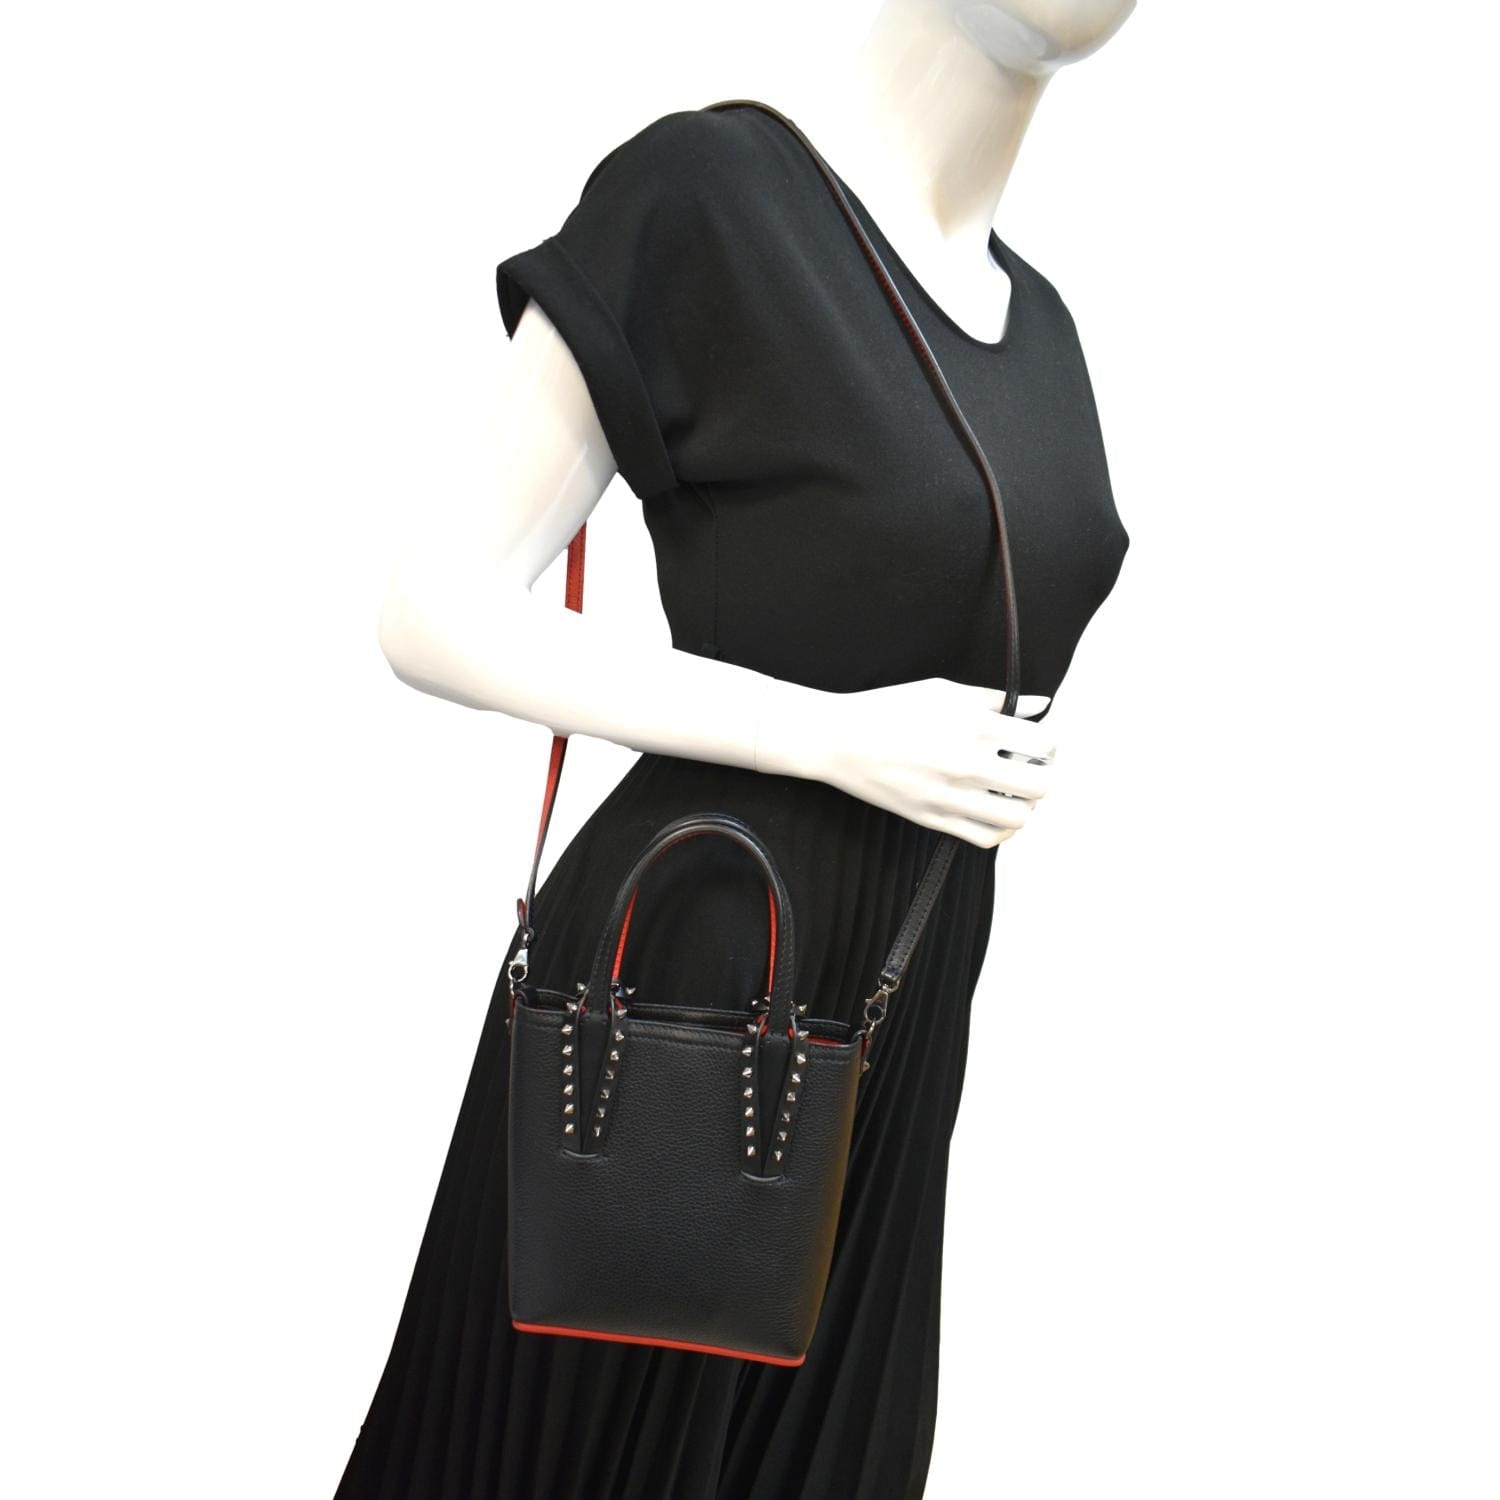 Cabata E/W mini - Tote bag - Calf leather - Black - Christian